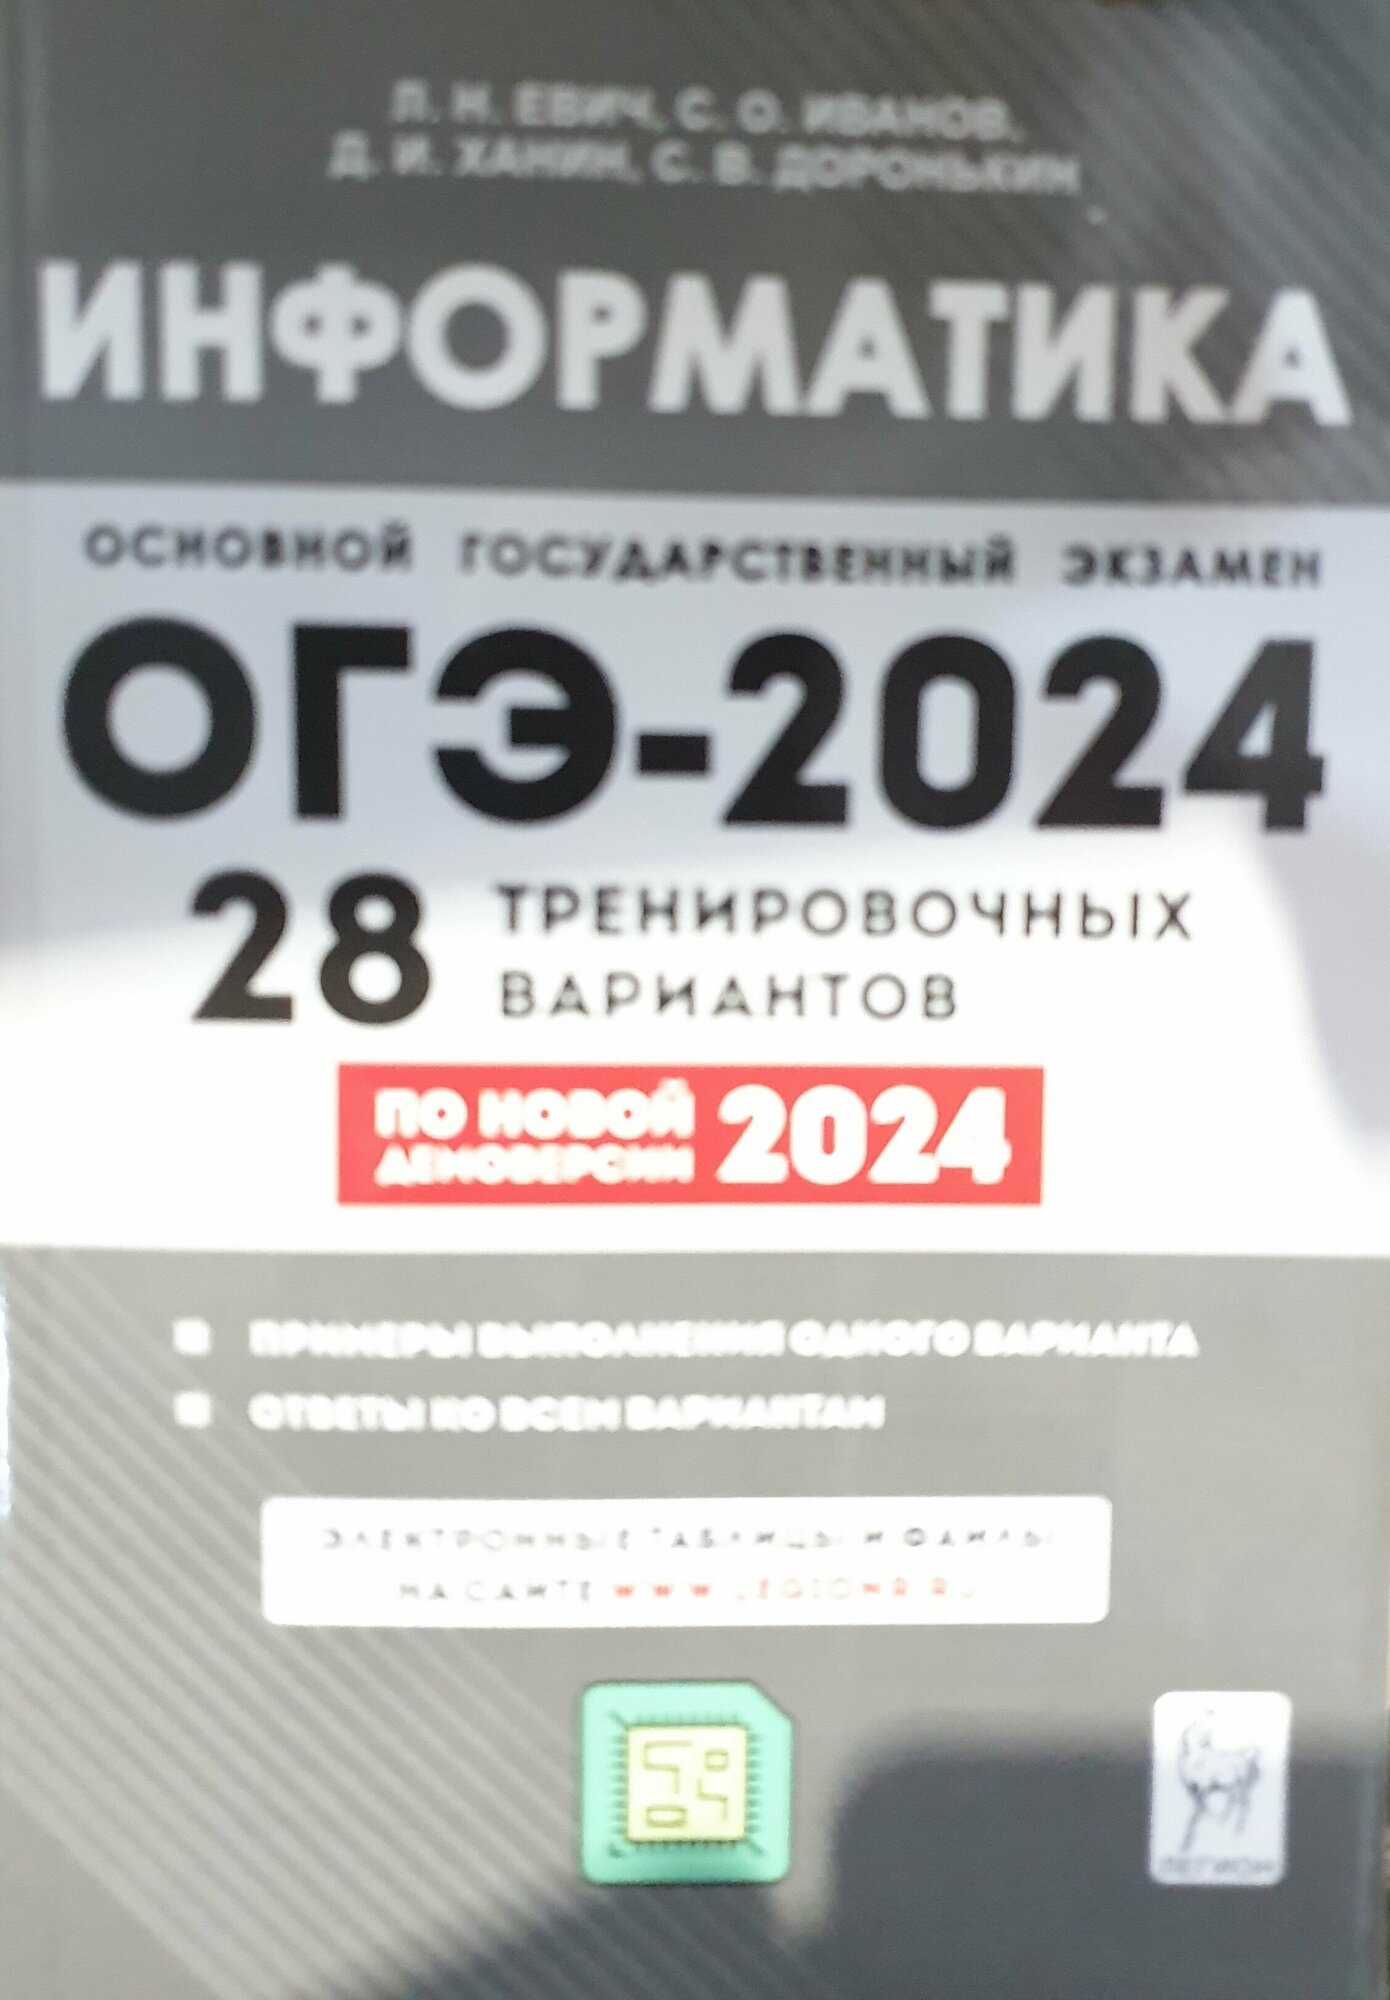 Информатика. 9 класс. Подготовка к ОГЭ-2024. 28 тренировочных вариантов по демоверсии 2024 года - фото №2